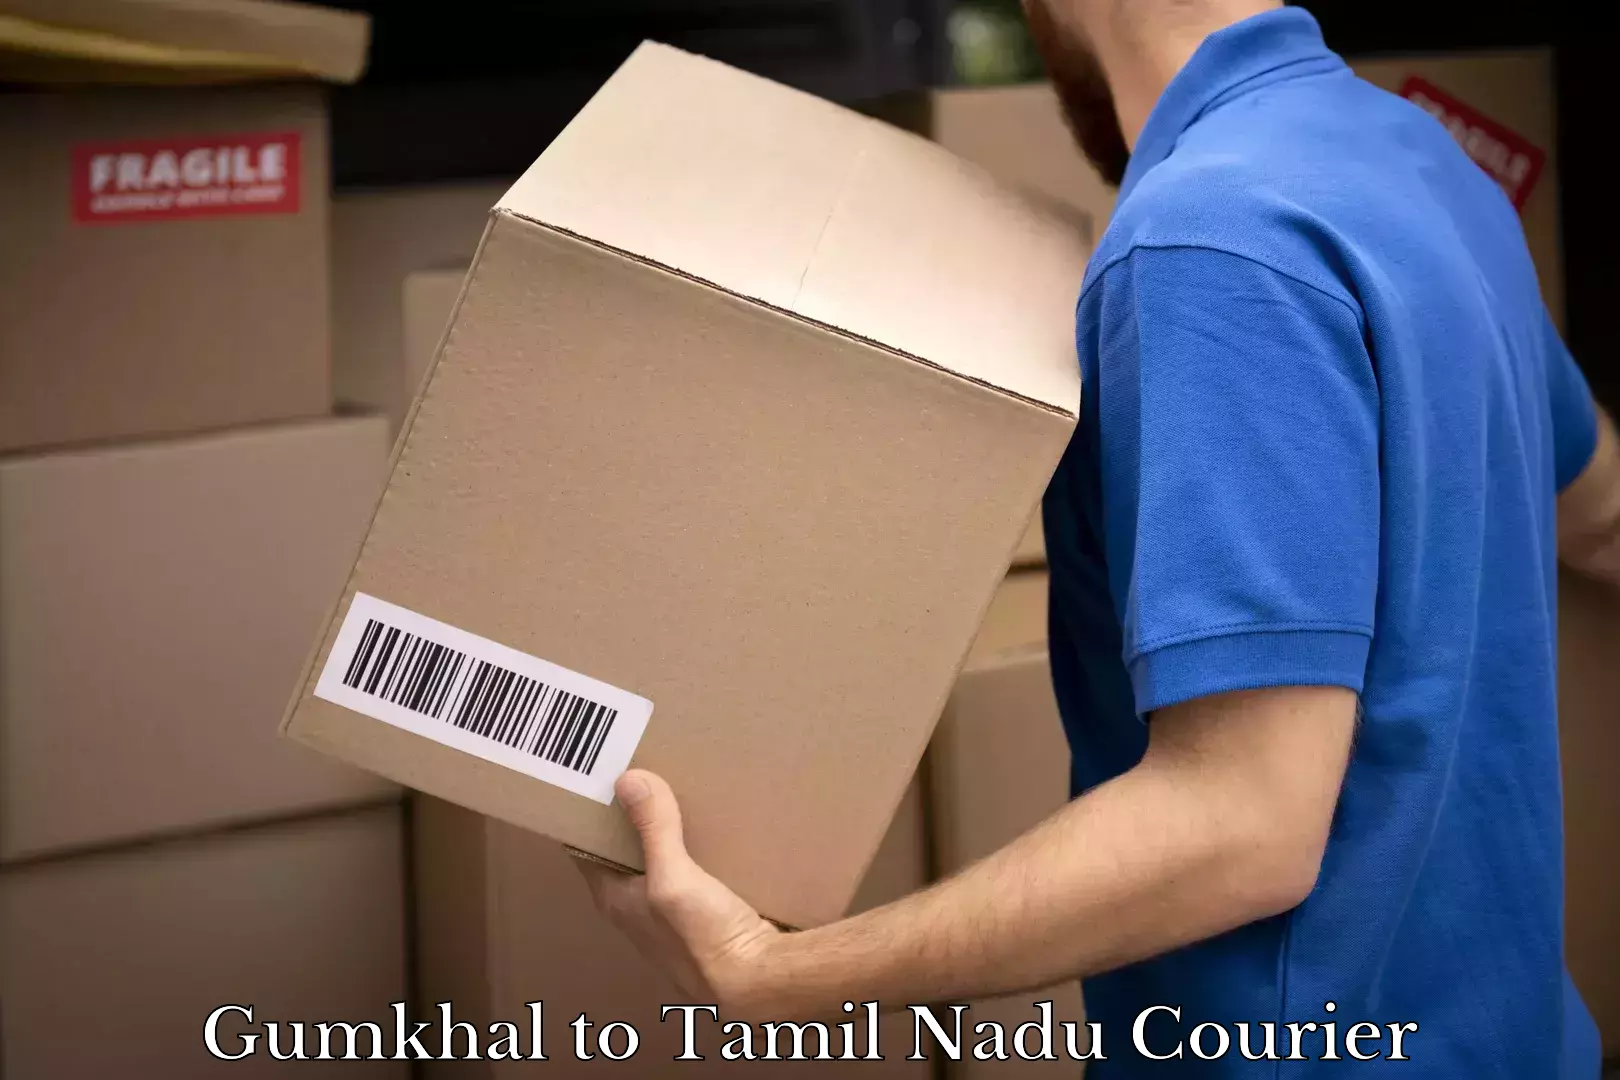 Logistics service provider Gumkhal to Tamil Nadu